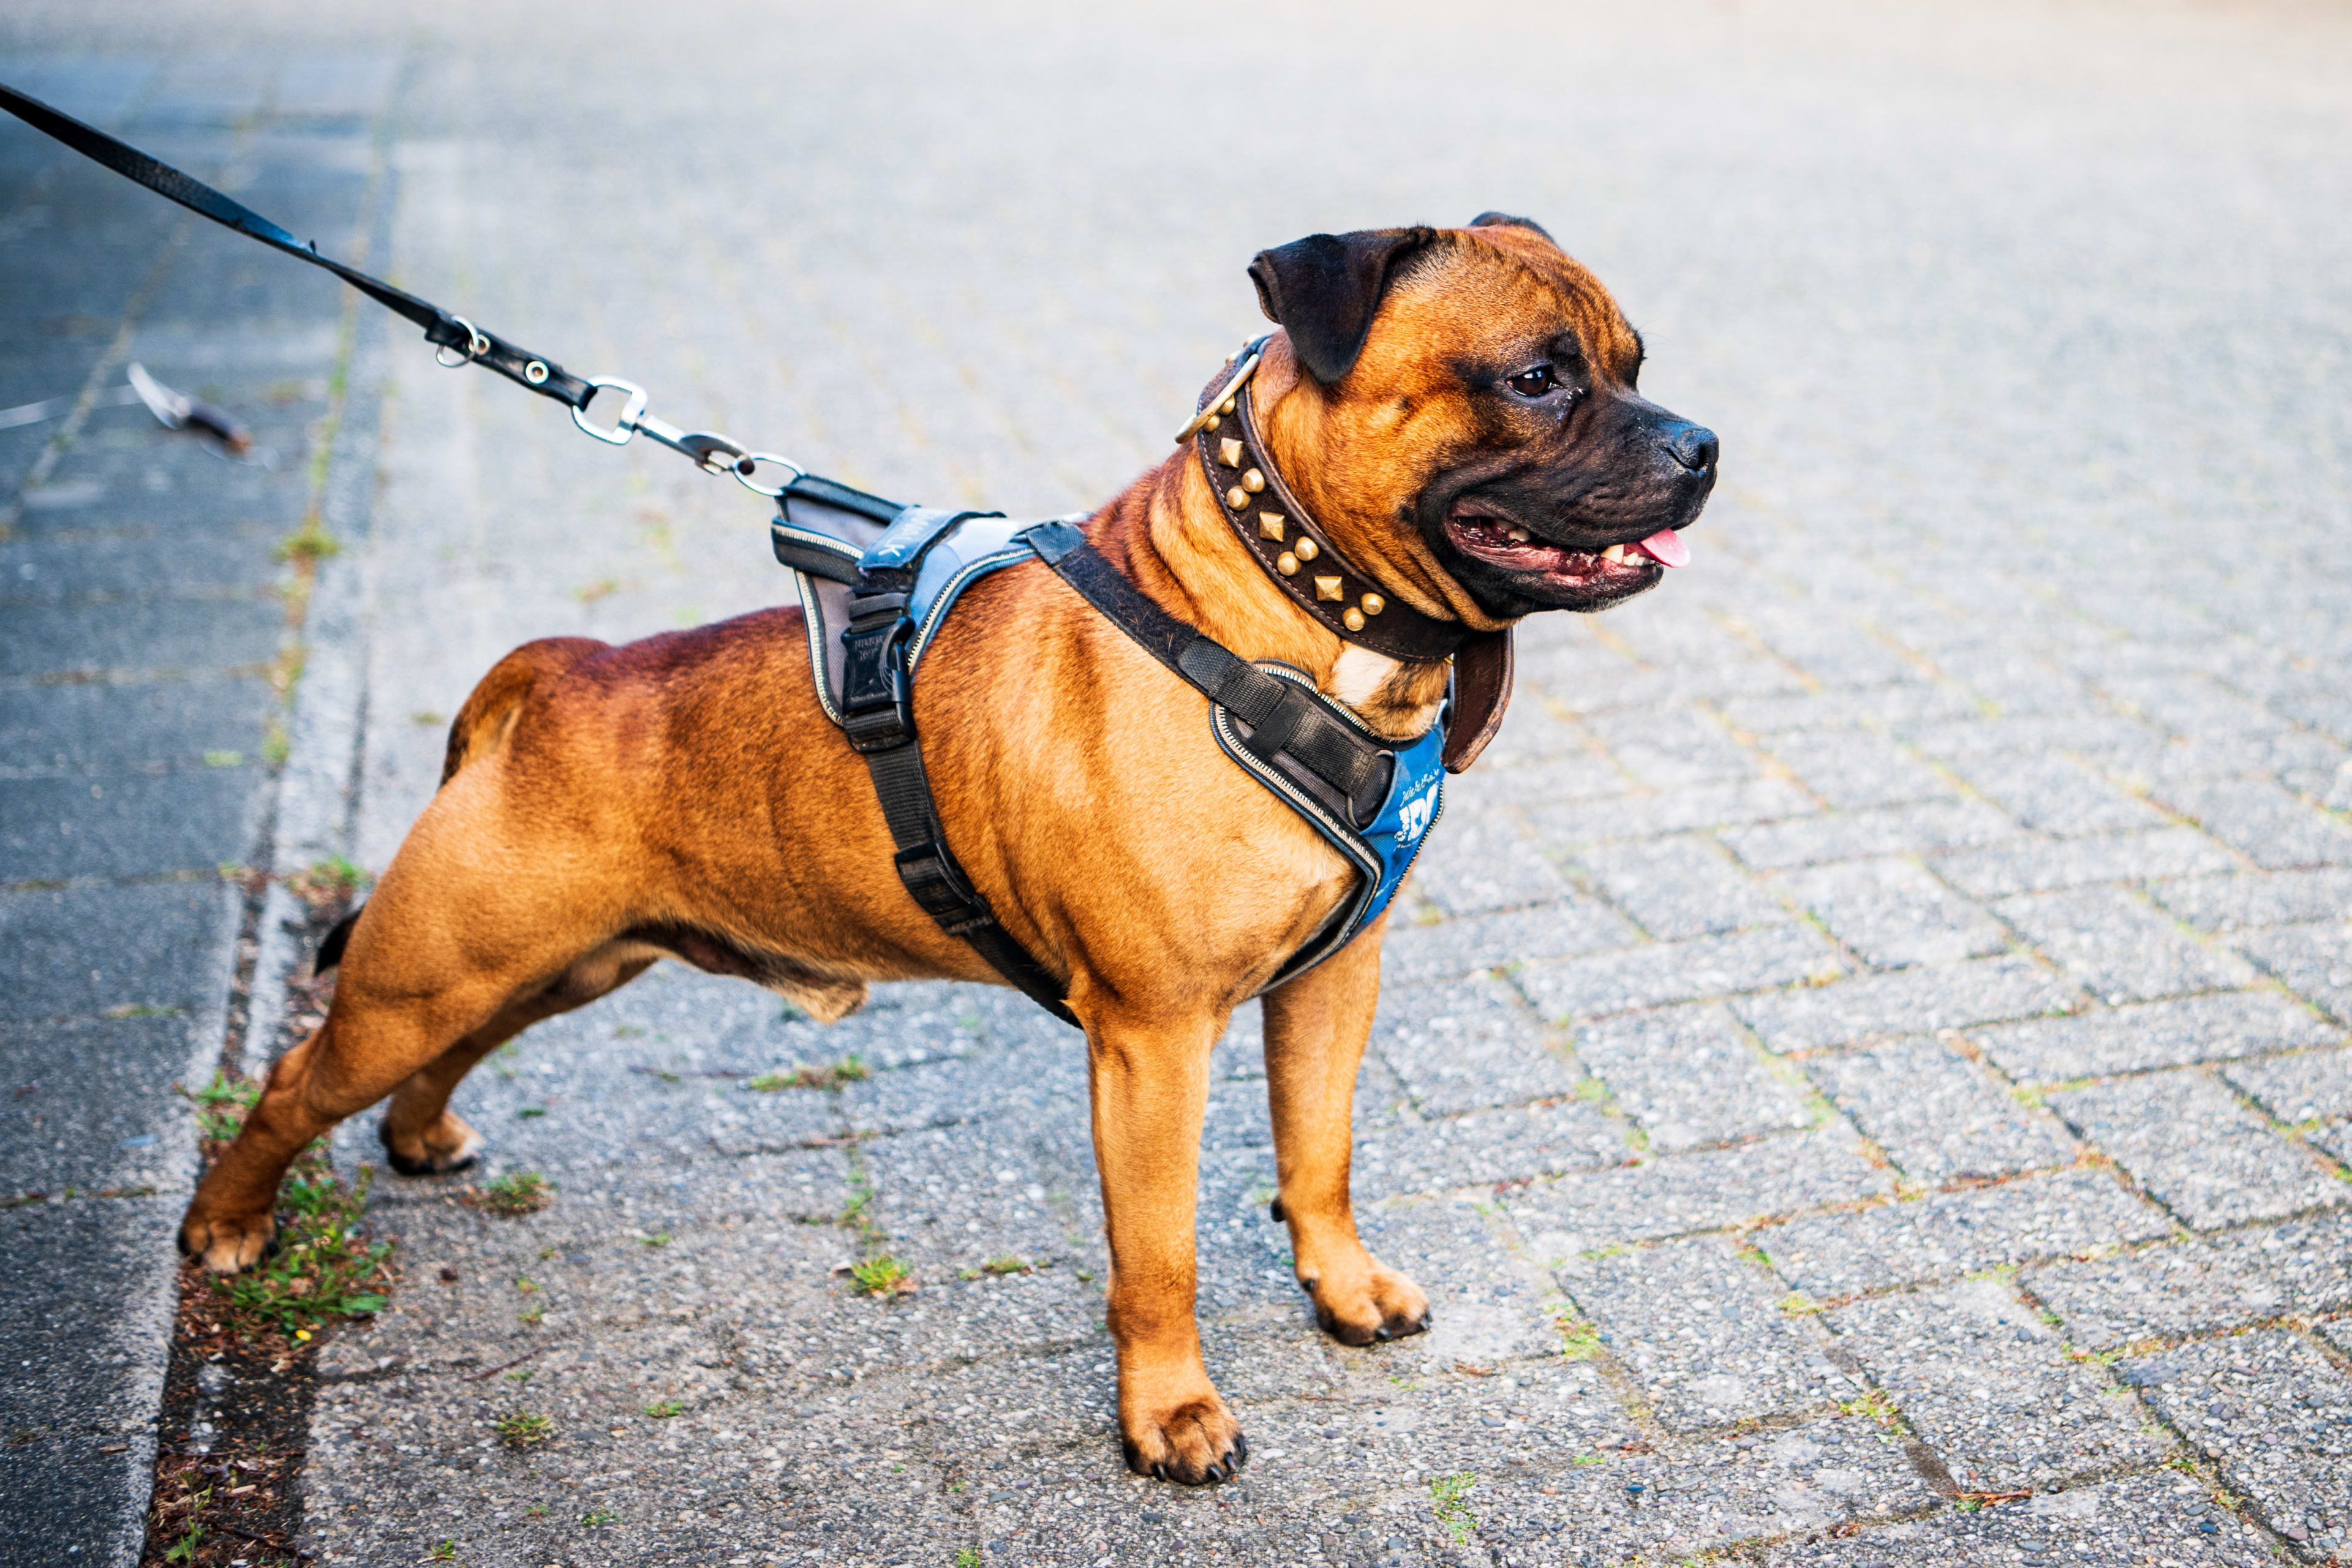 Hondenbaasjes Hoek van Holland in rep en roer over verplicht aanlijnen